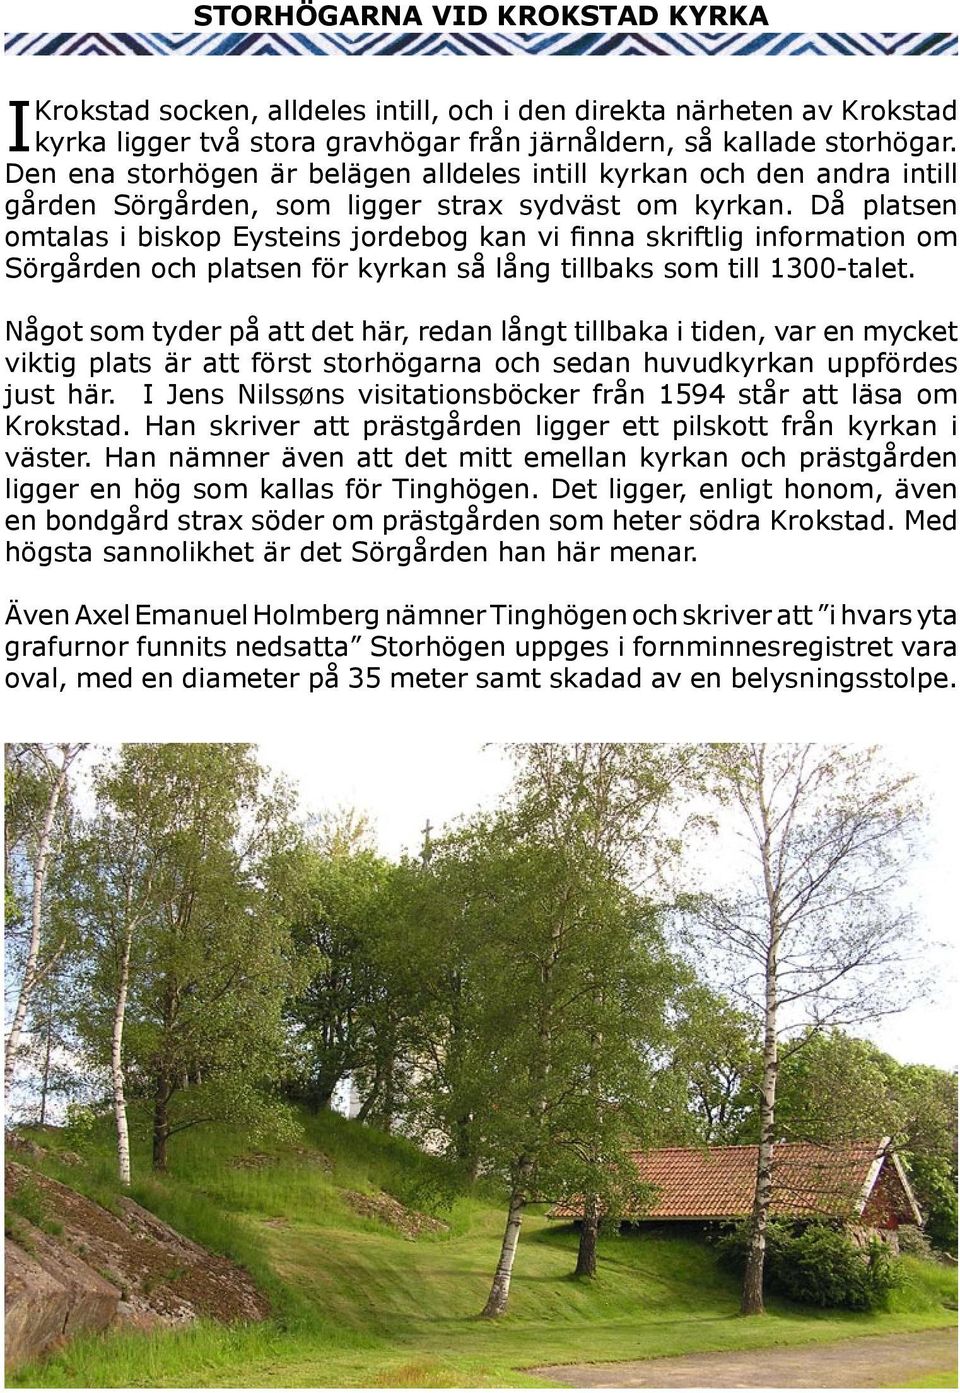 Då platsen omtalas i biskop Eysteins jordebog kan vi finna skriftlig information om Sörgården och platsen för kyrkan så lång tillbaks som till 1300-talet.